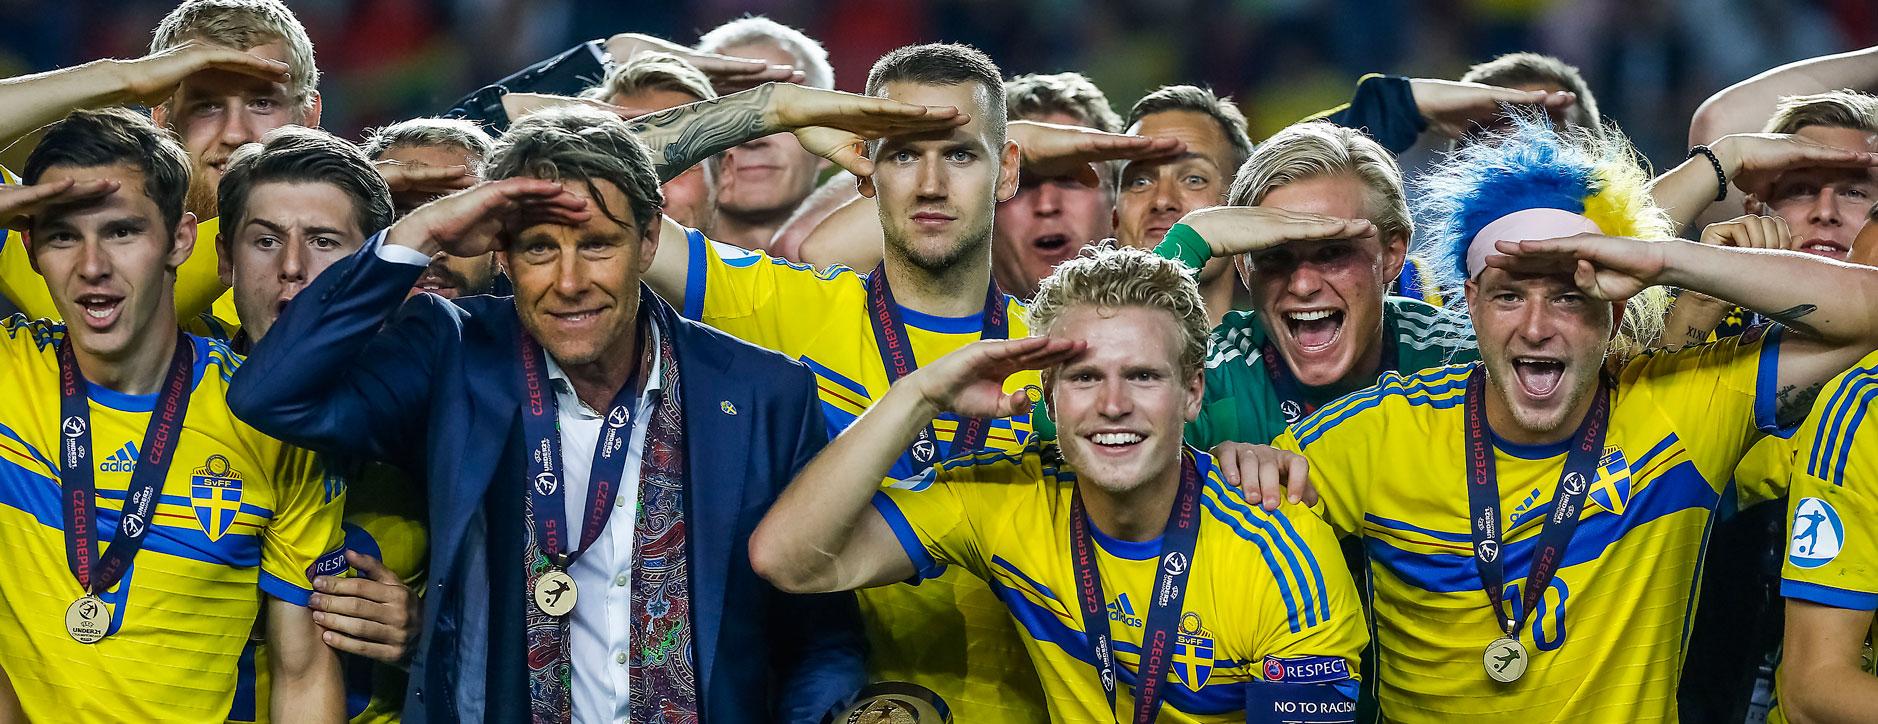 Folkets favoriter Guldhjältarna tackar svenska fansen med "honnören".